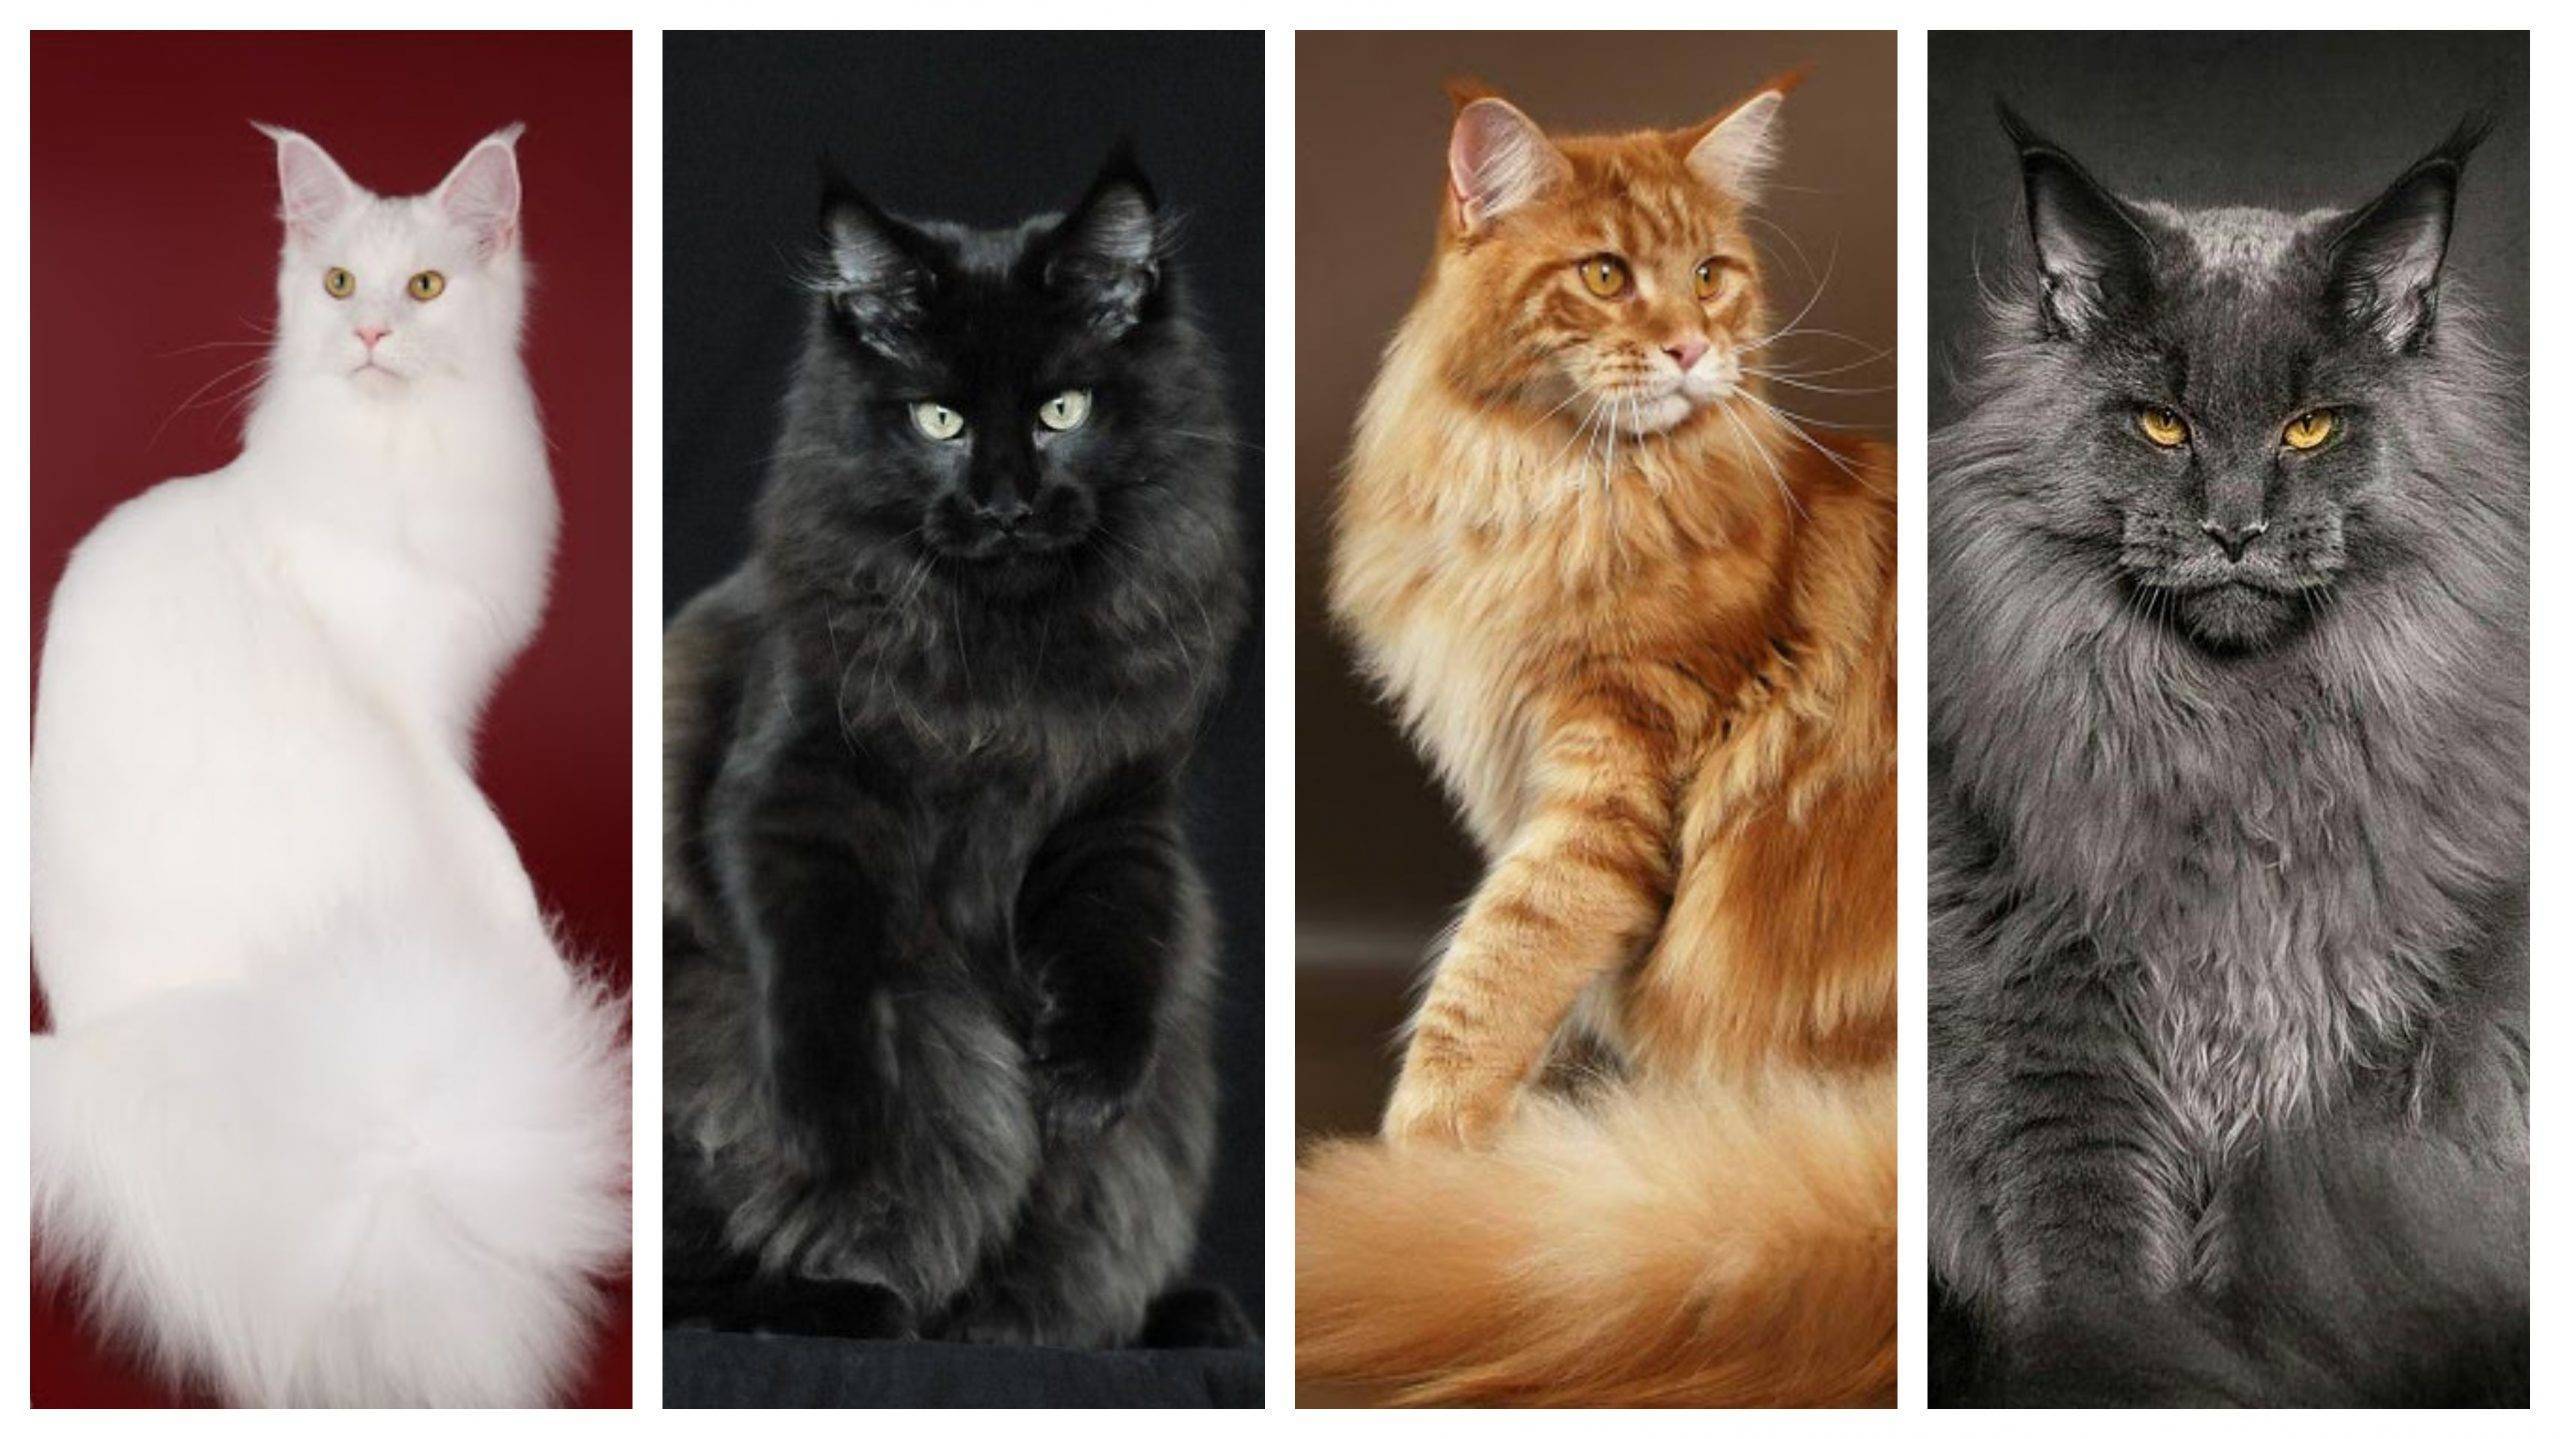 Мейн-кун: описание породы кошек, фото, окрасы, размеры и таблица веса по месяцам, характер и повадки